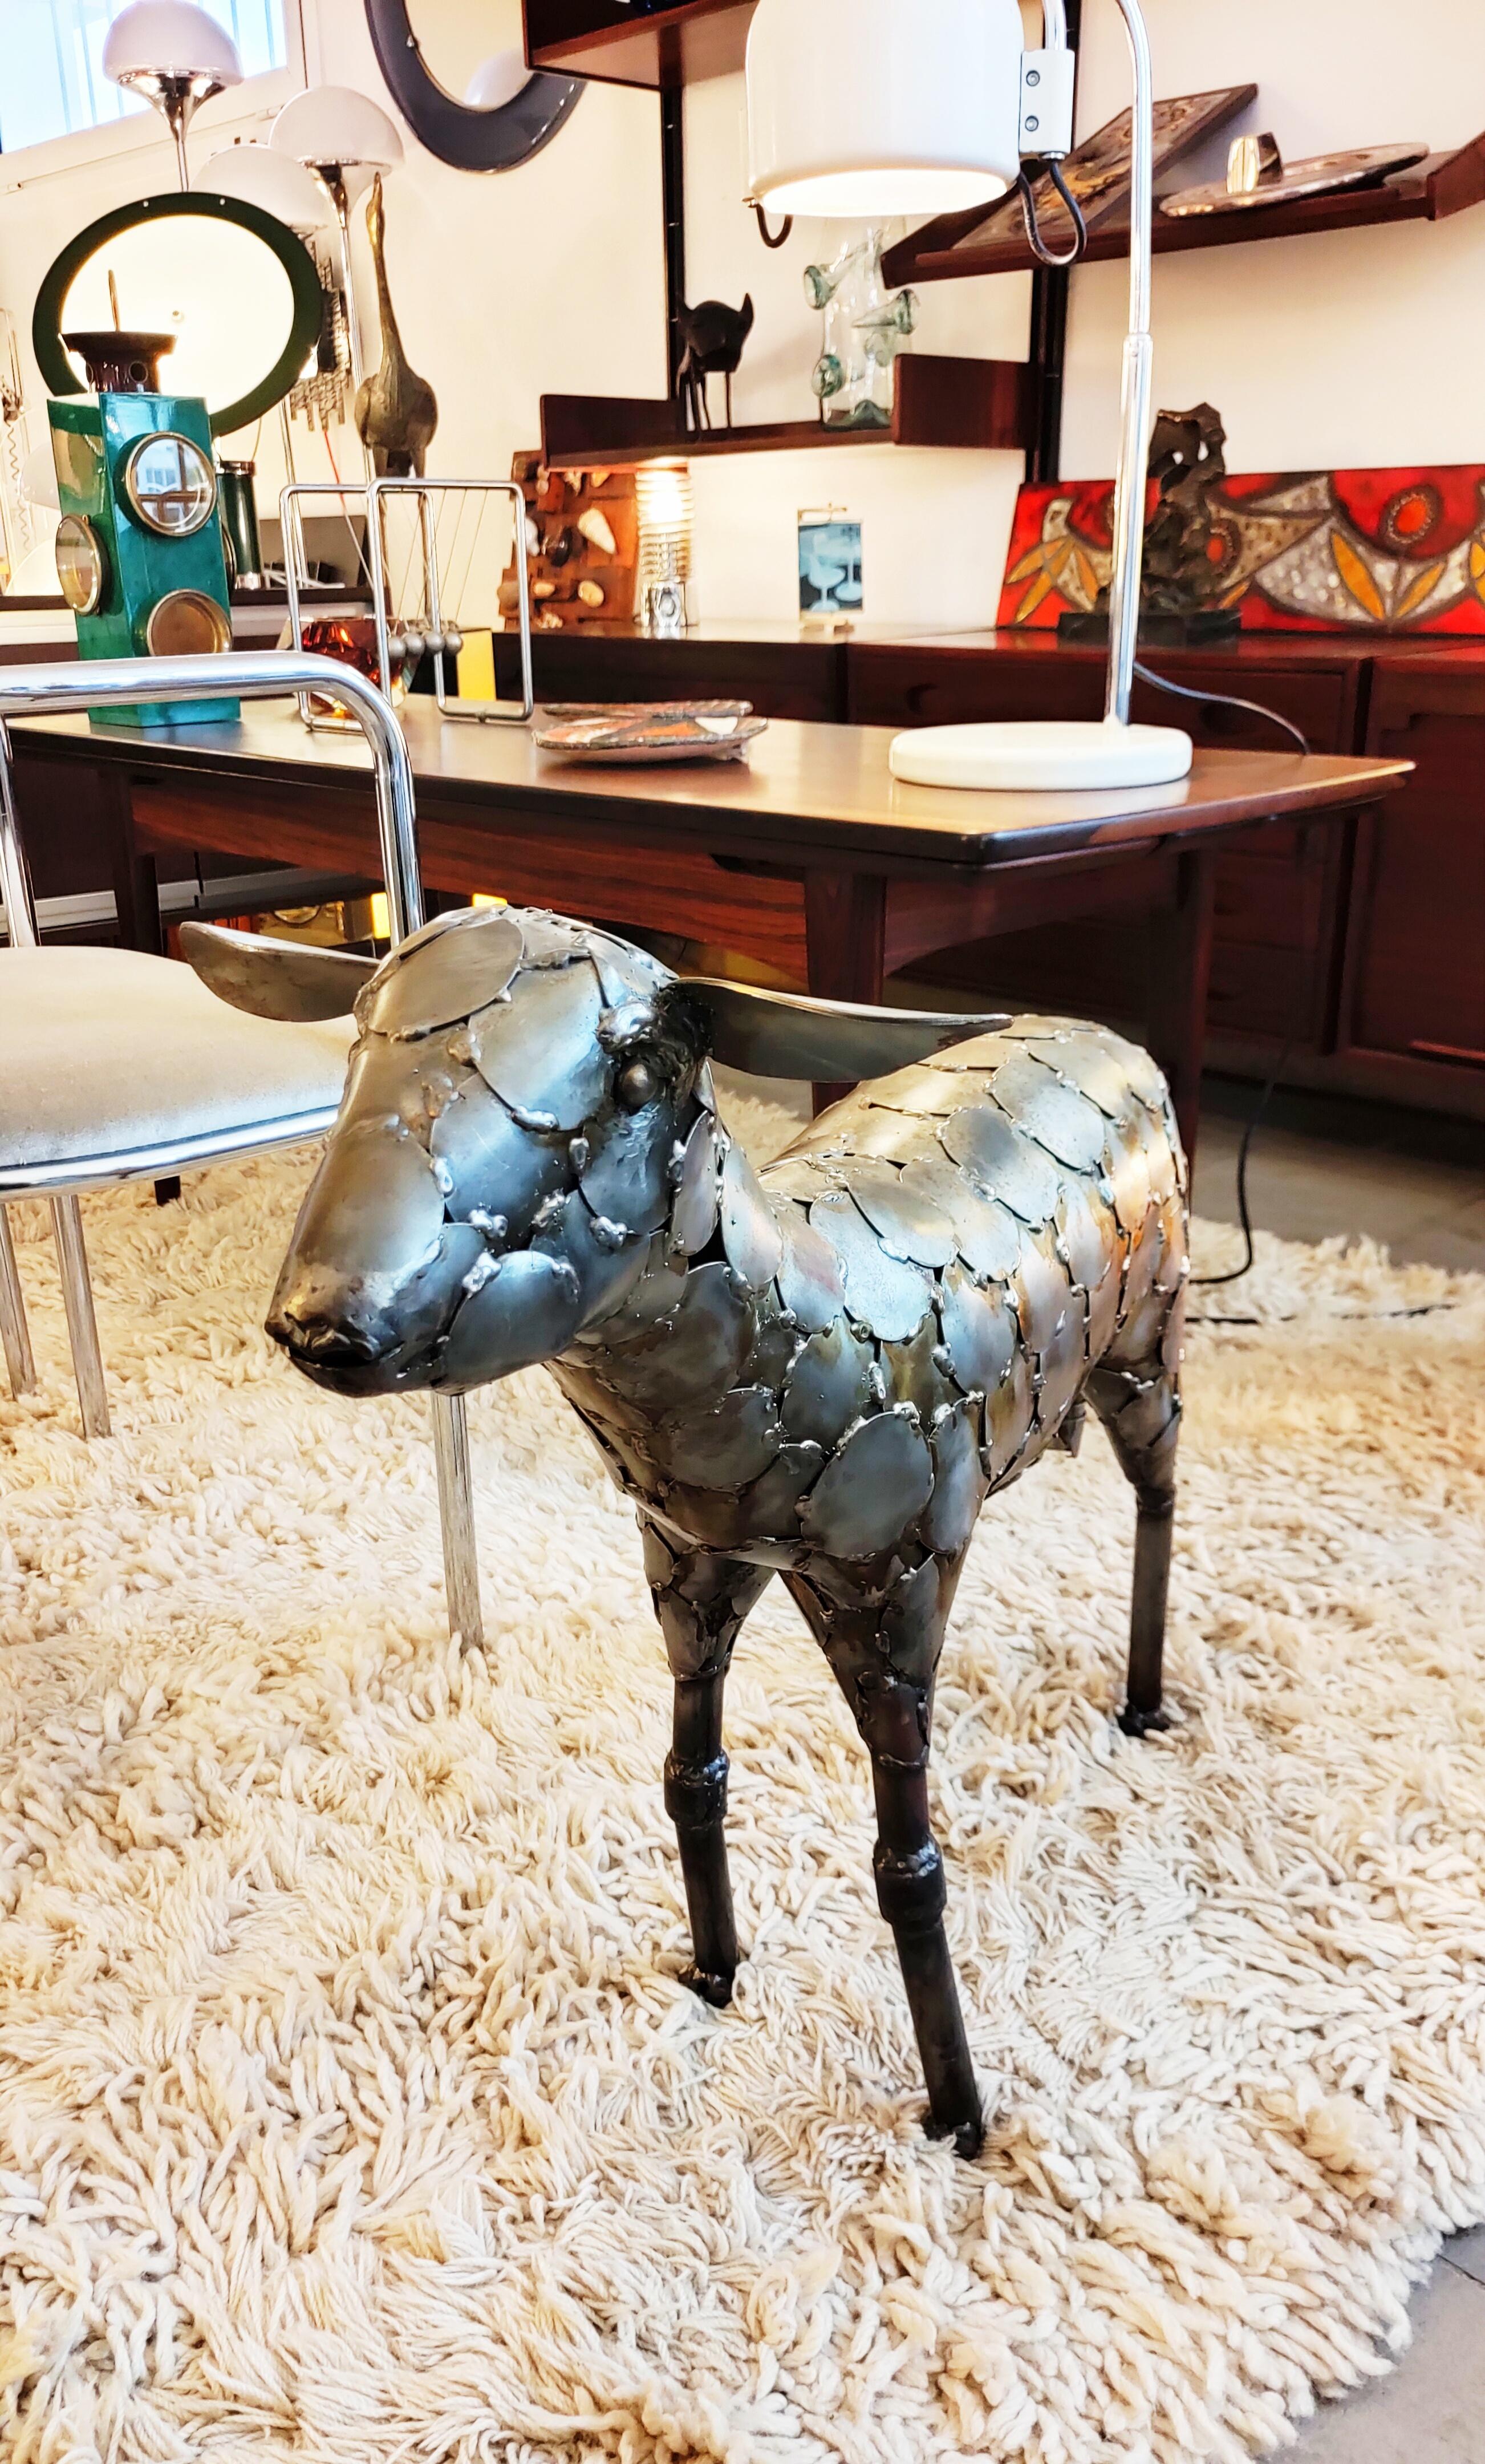 Belle et rare sculpture de mouton en métal fabriquée en Espagne dans les années 1970.
Ce mouton retranscrit une incroyable expression très réaliste, ce travail est vraiment très bien fait.